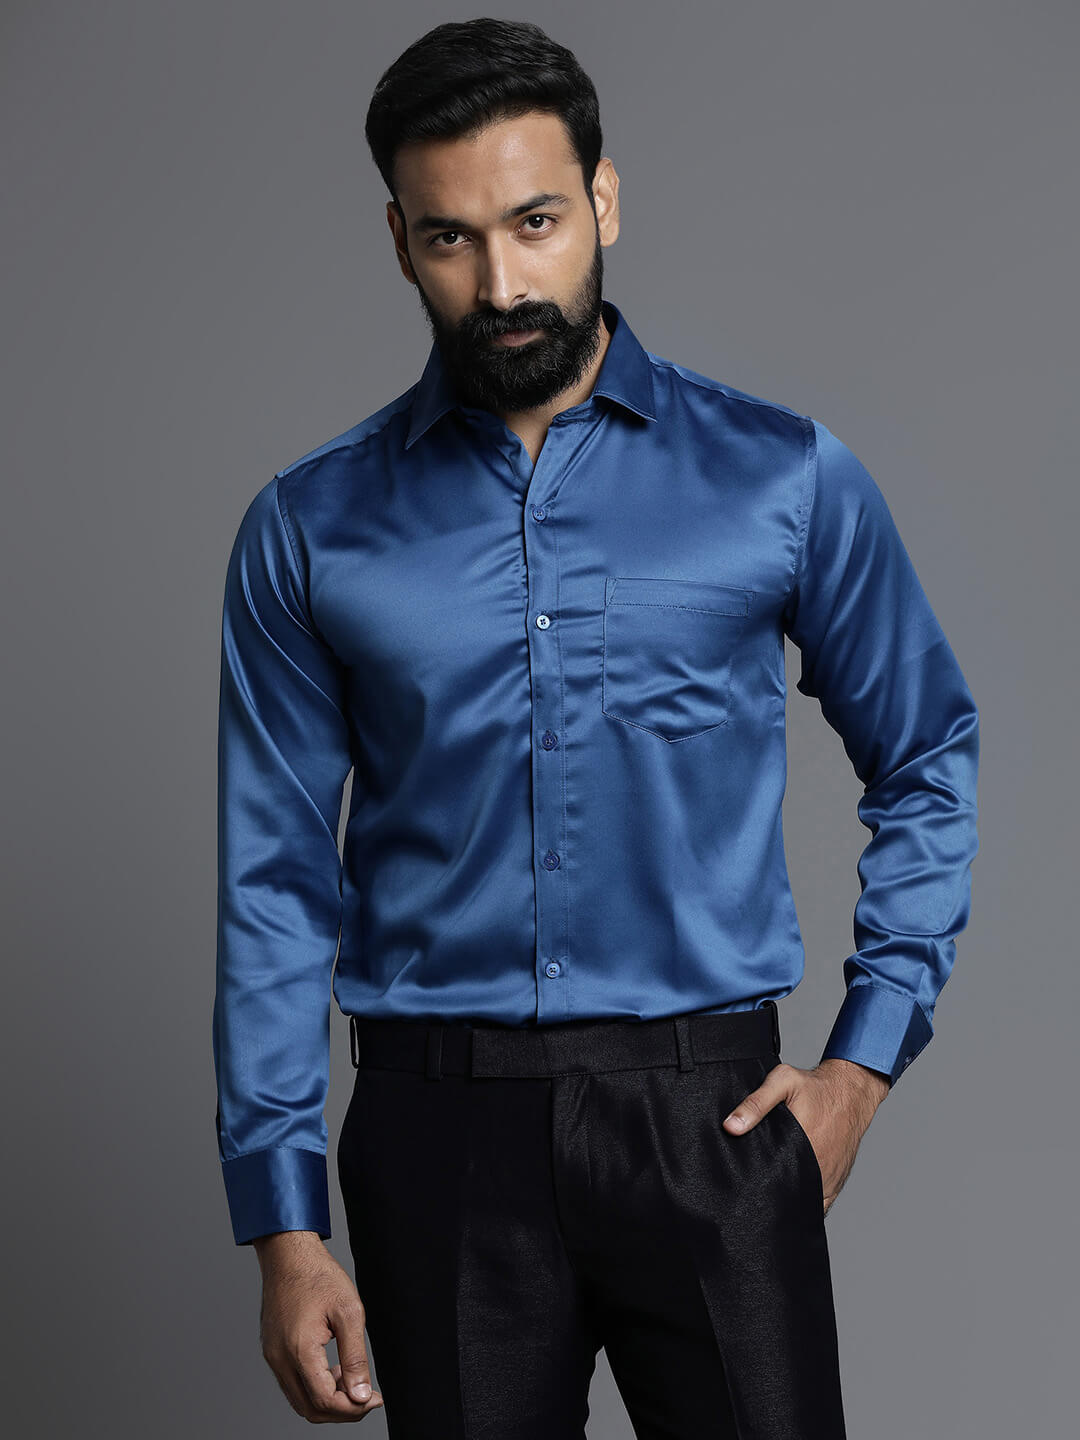 royal-blue-satin-shirt